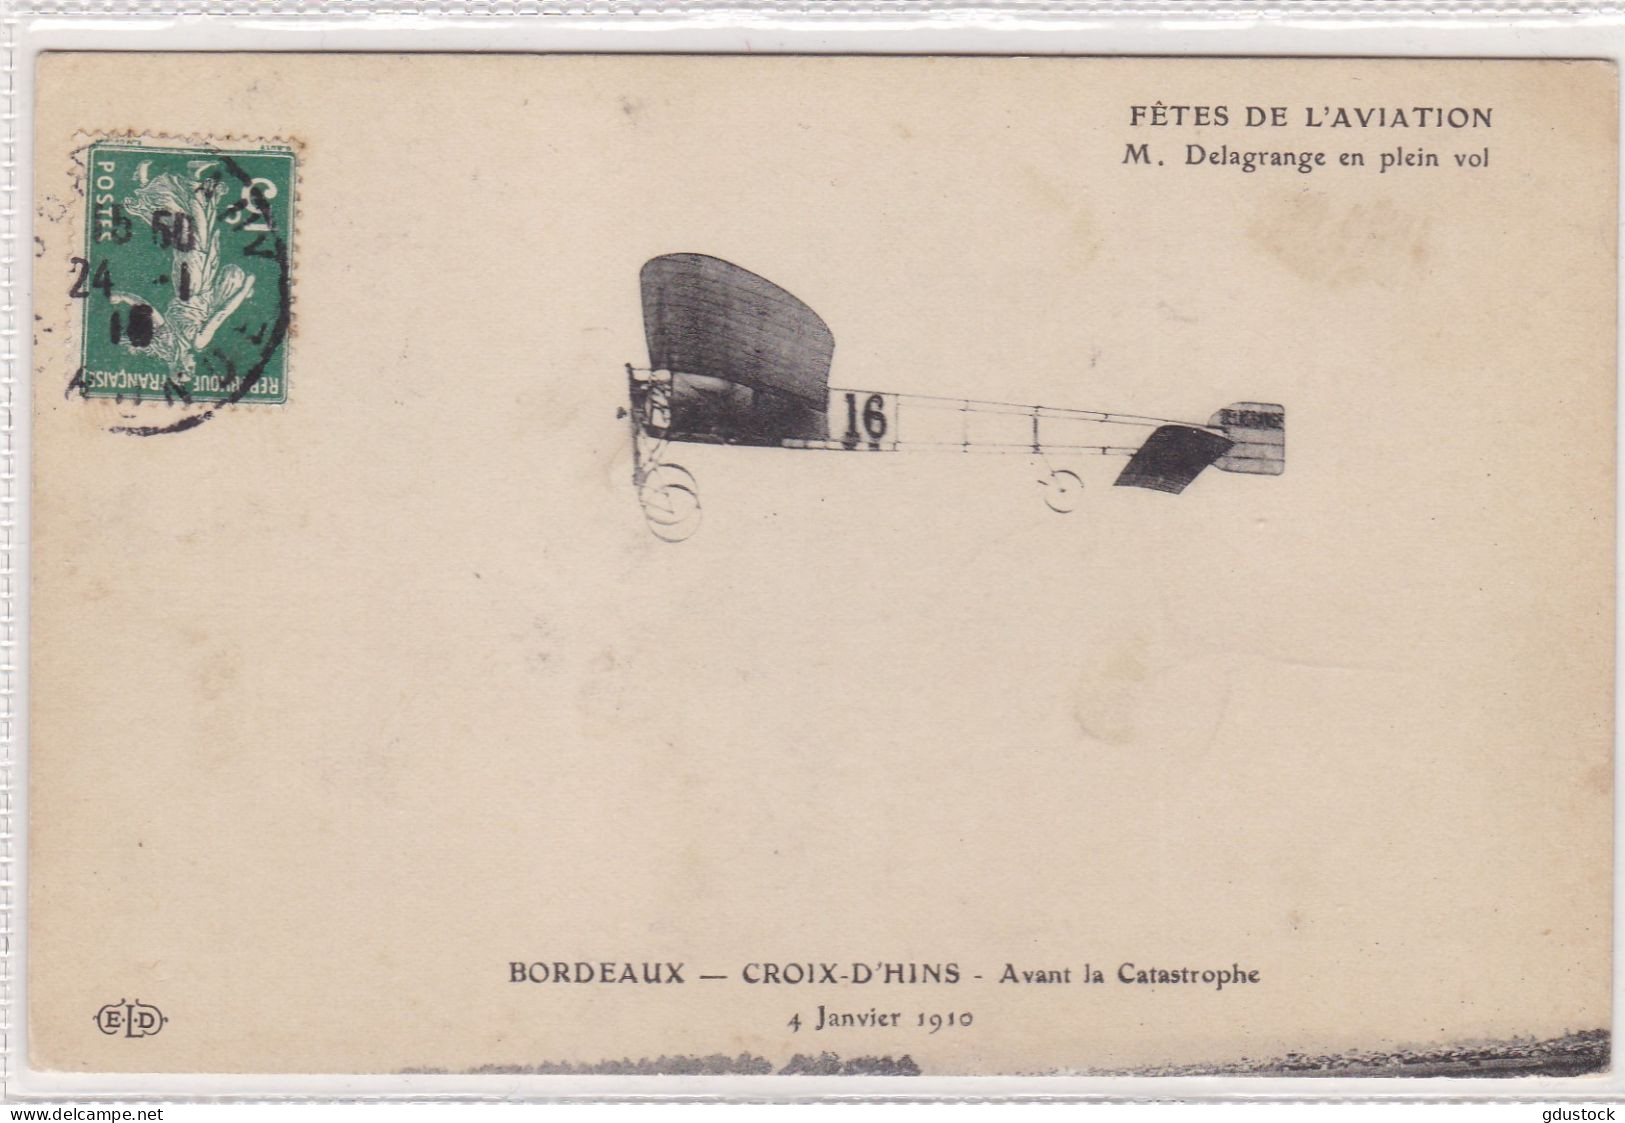 Fêtes De L'Aviation - M. Delagrange En Plein Vol - Bordeaux - Croix D'Hins - Avant La Catastrophe 4 Janvier 1910 - Piloten